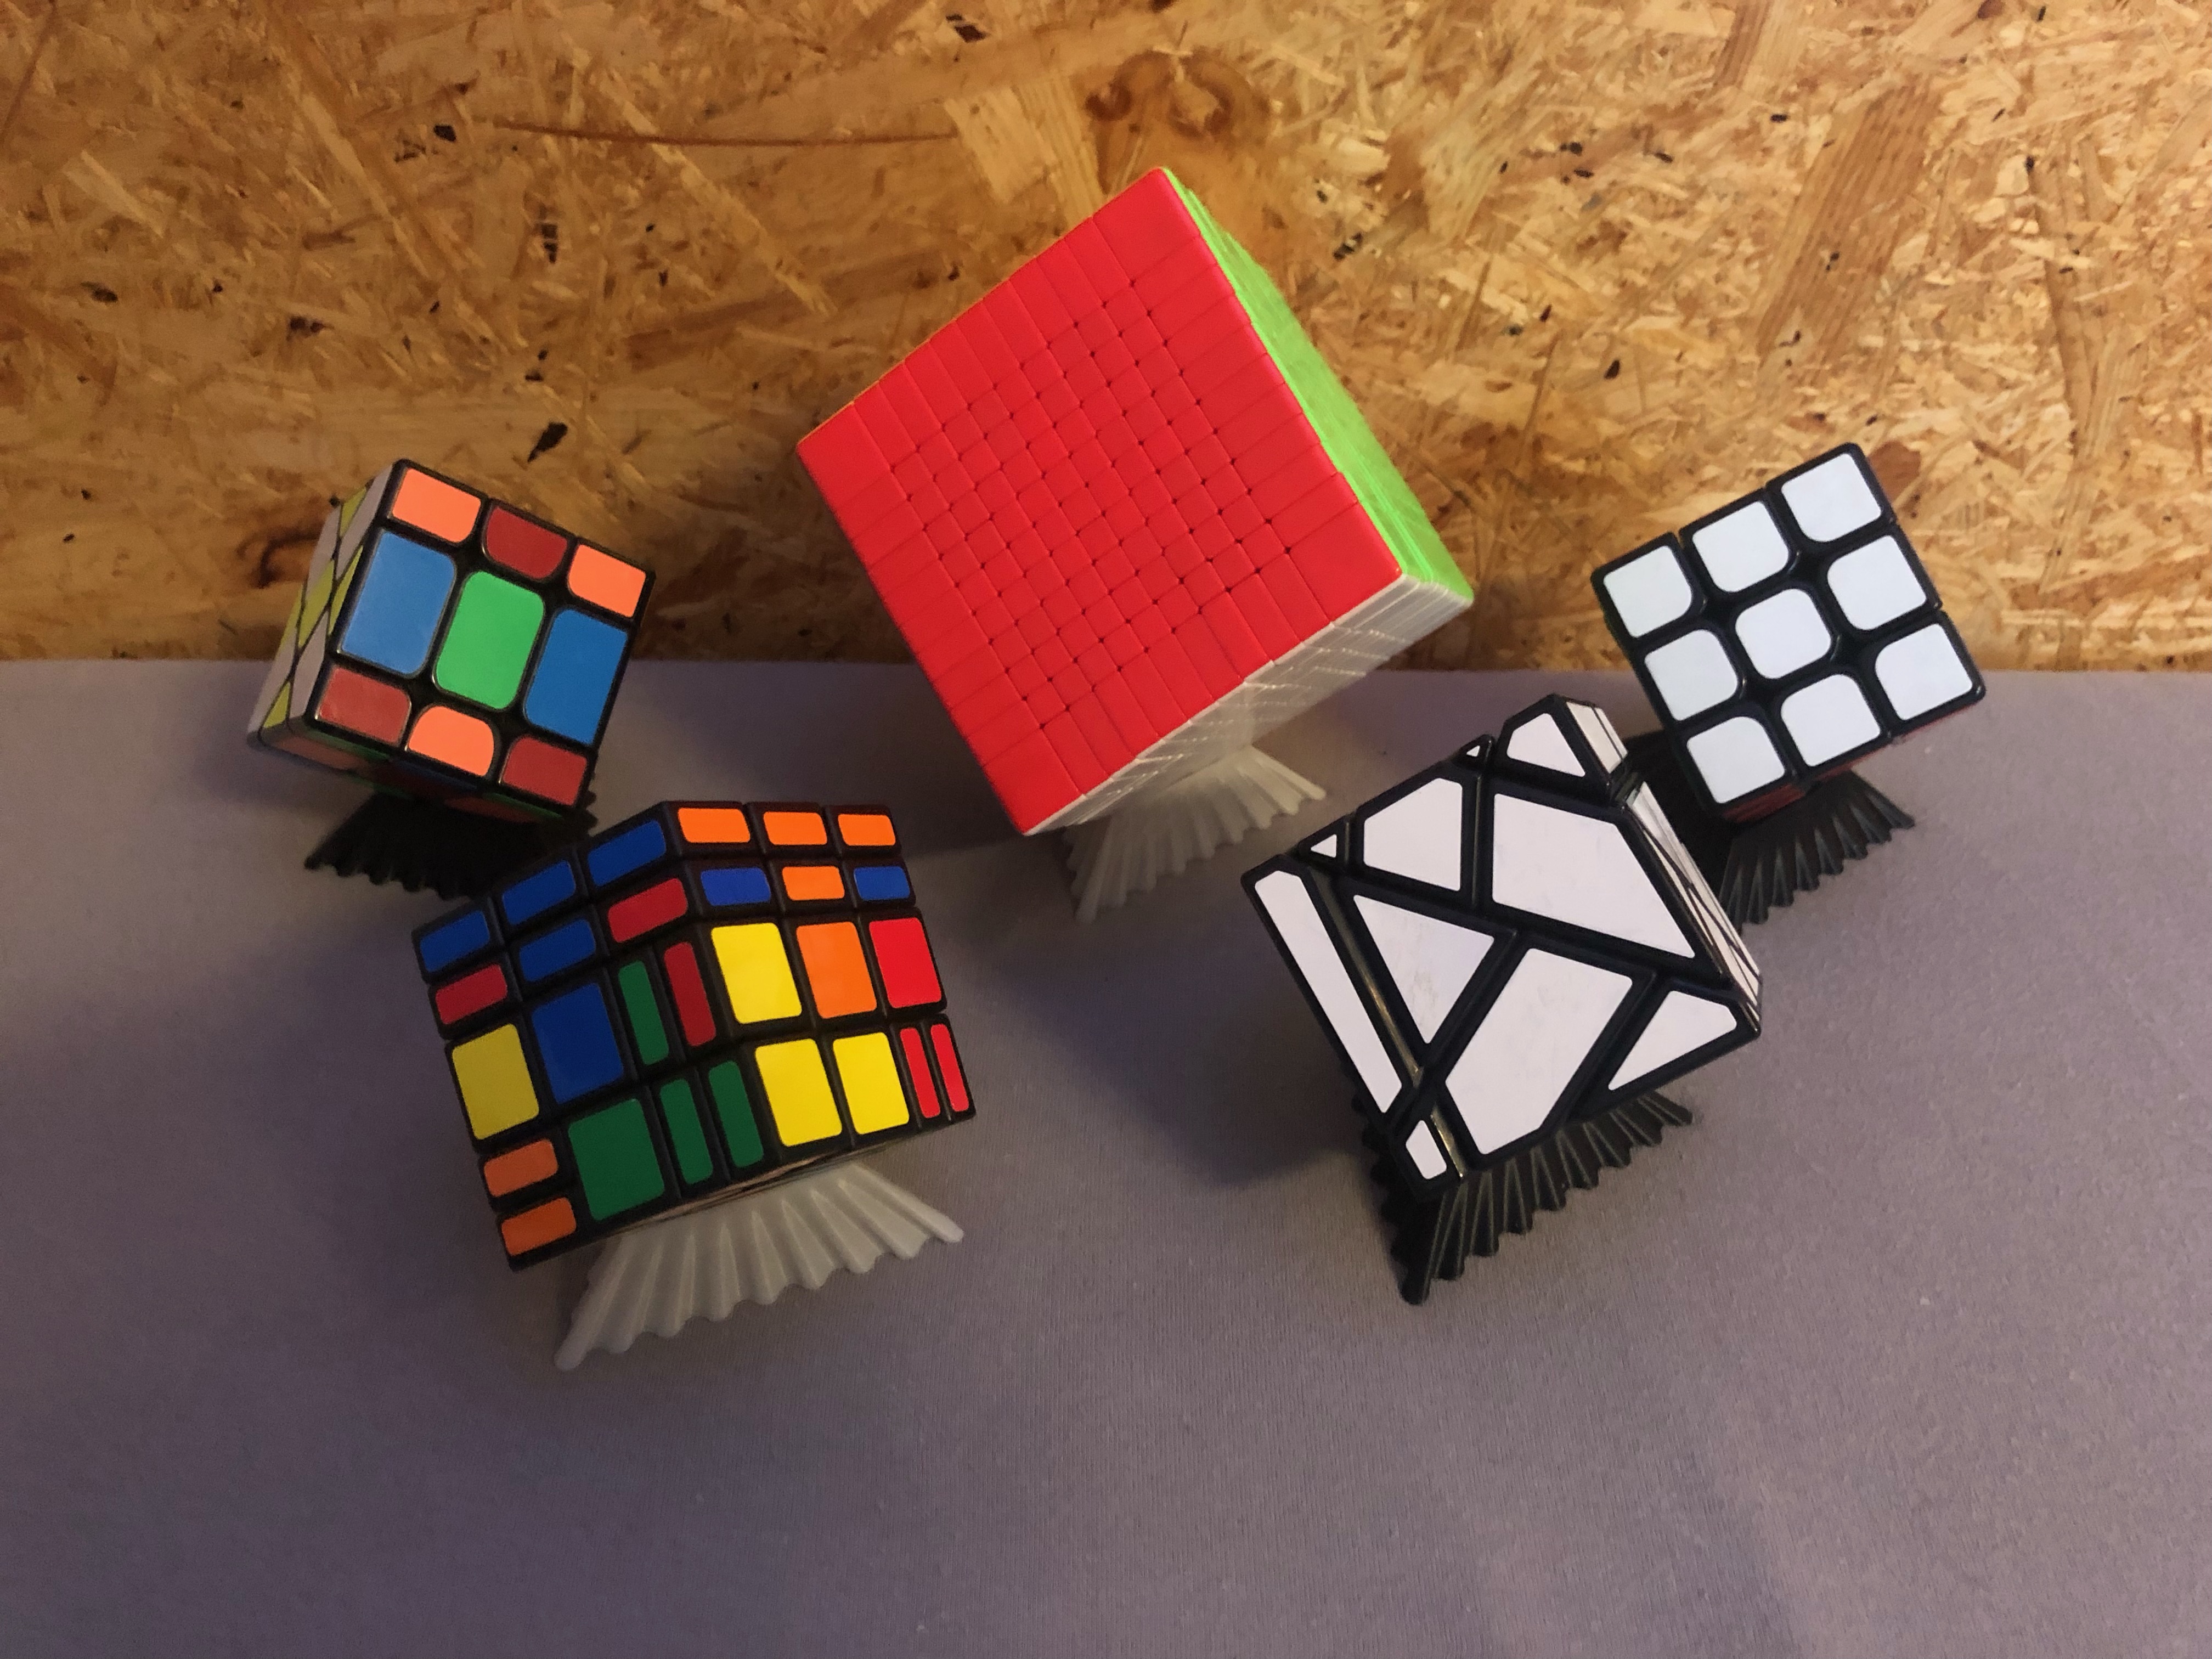 Rubiks Cube Stand / Zauberwürfel Halterung (Vasemode)